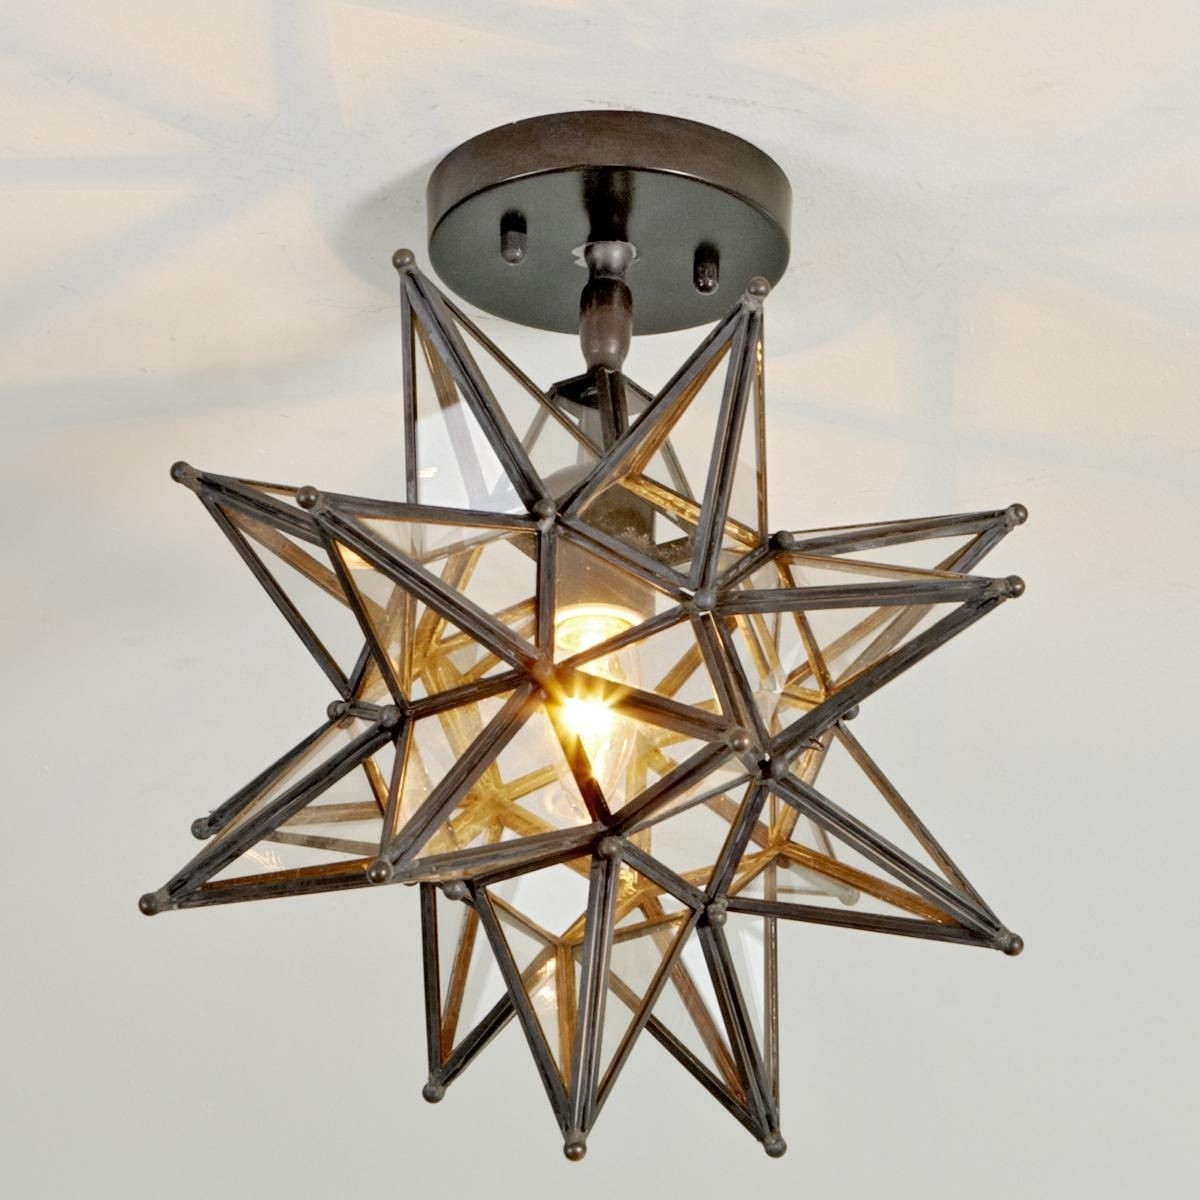 Glass star ceiling light